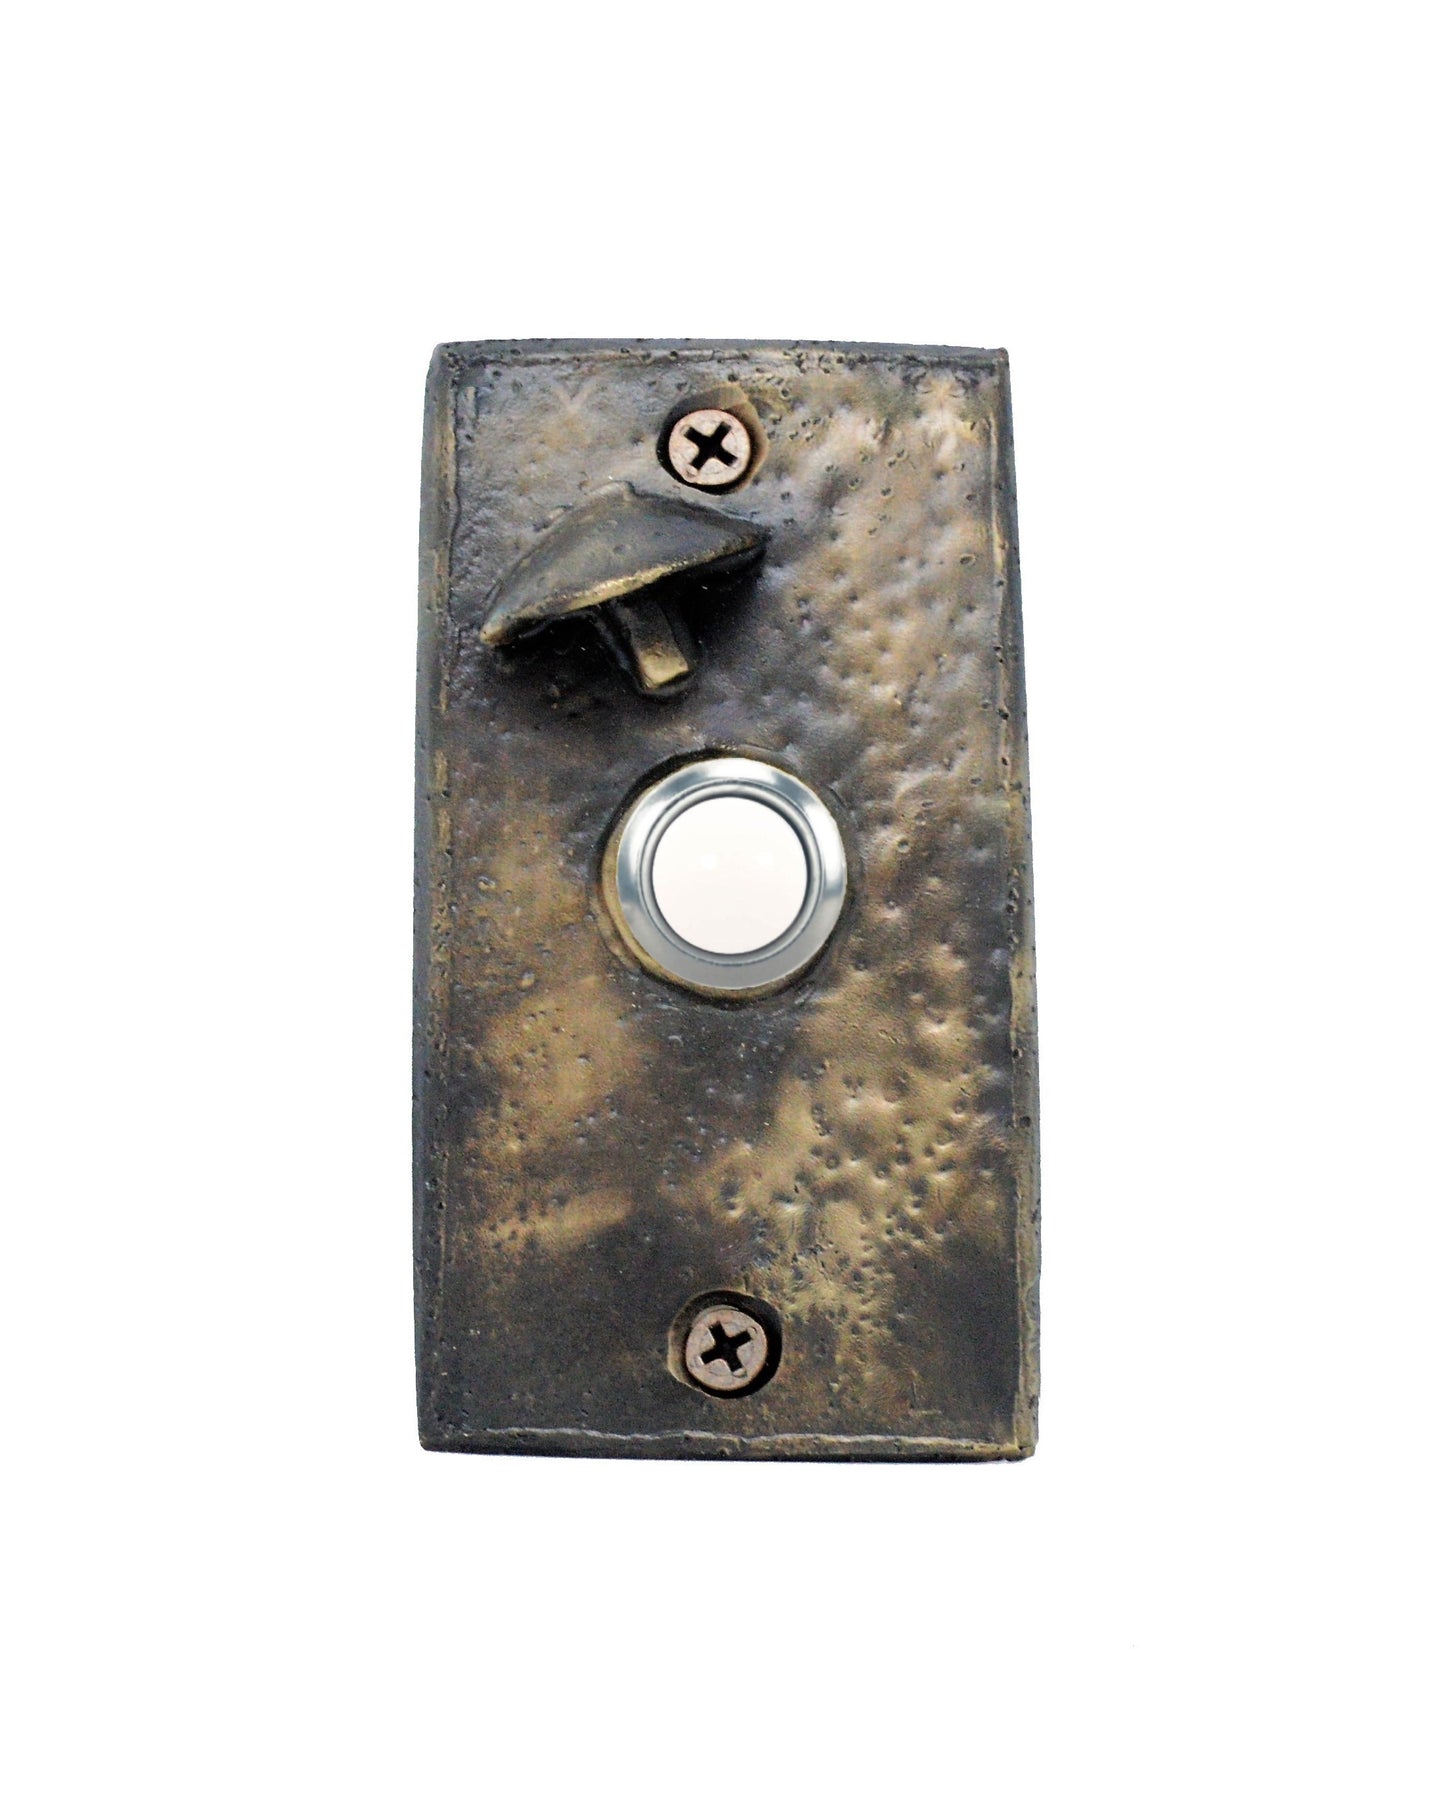 Rectangular toadstool mushroom doorbell - solid bronze